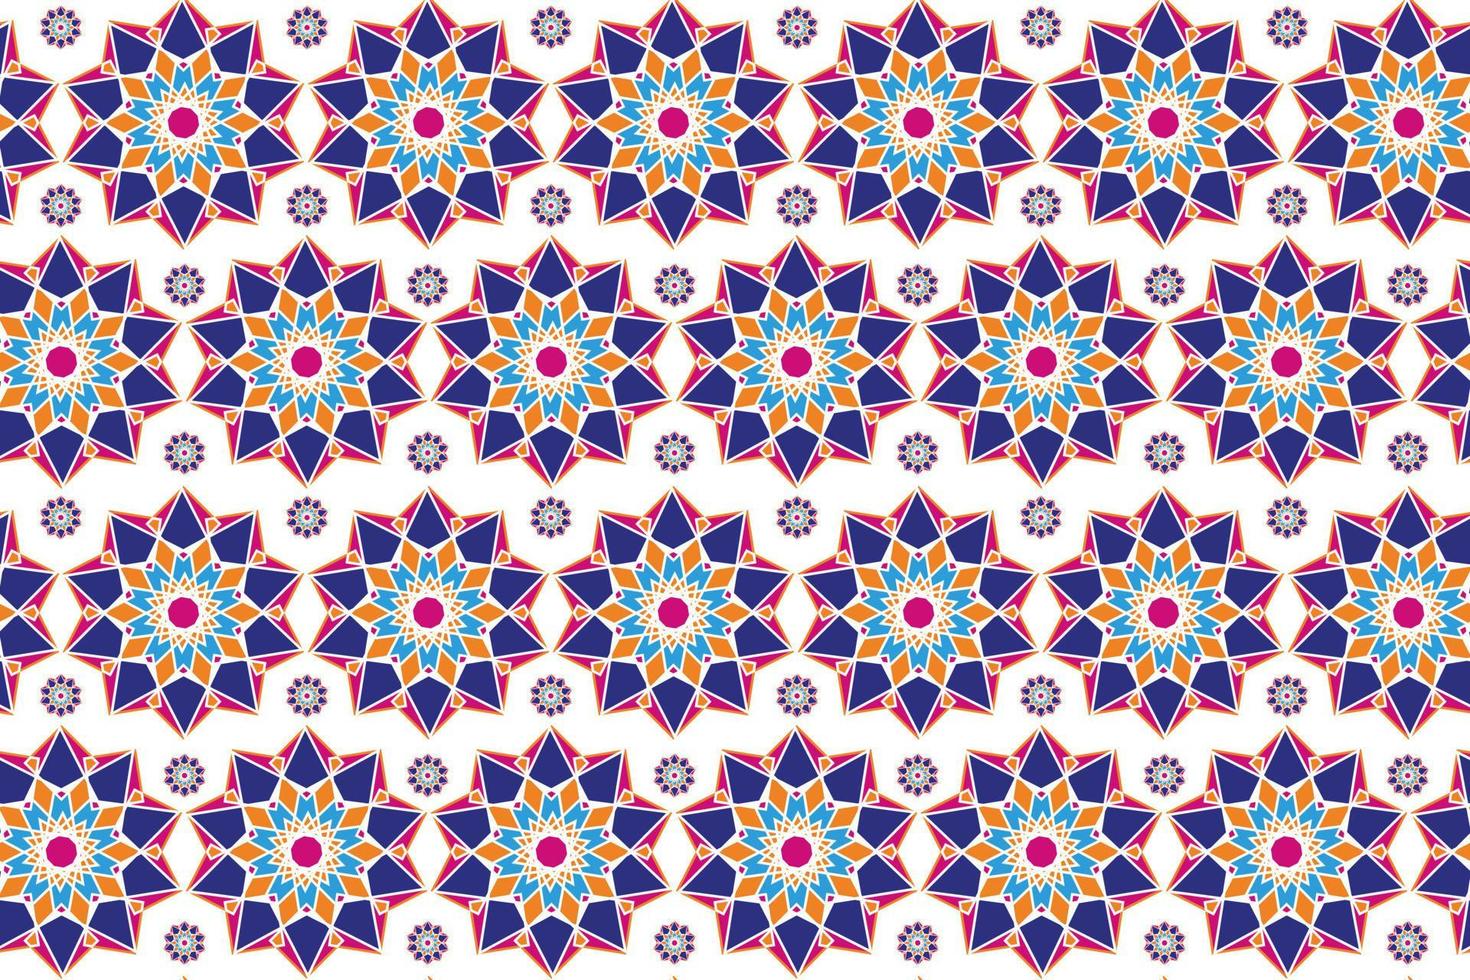 padrão geométrico sem costura, motivo islâmico. ornamentos árabes coloridos. mandala. padrões para tecidos, embalagens, papel de parede. ilustração vetorial em fundo branco vetor